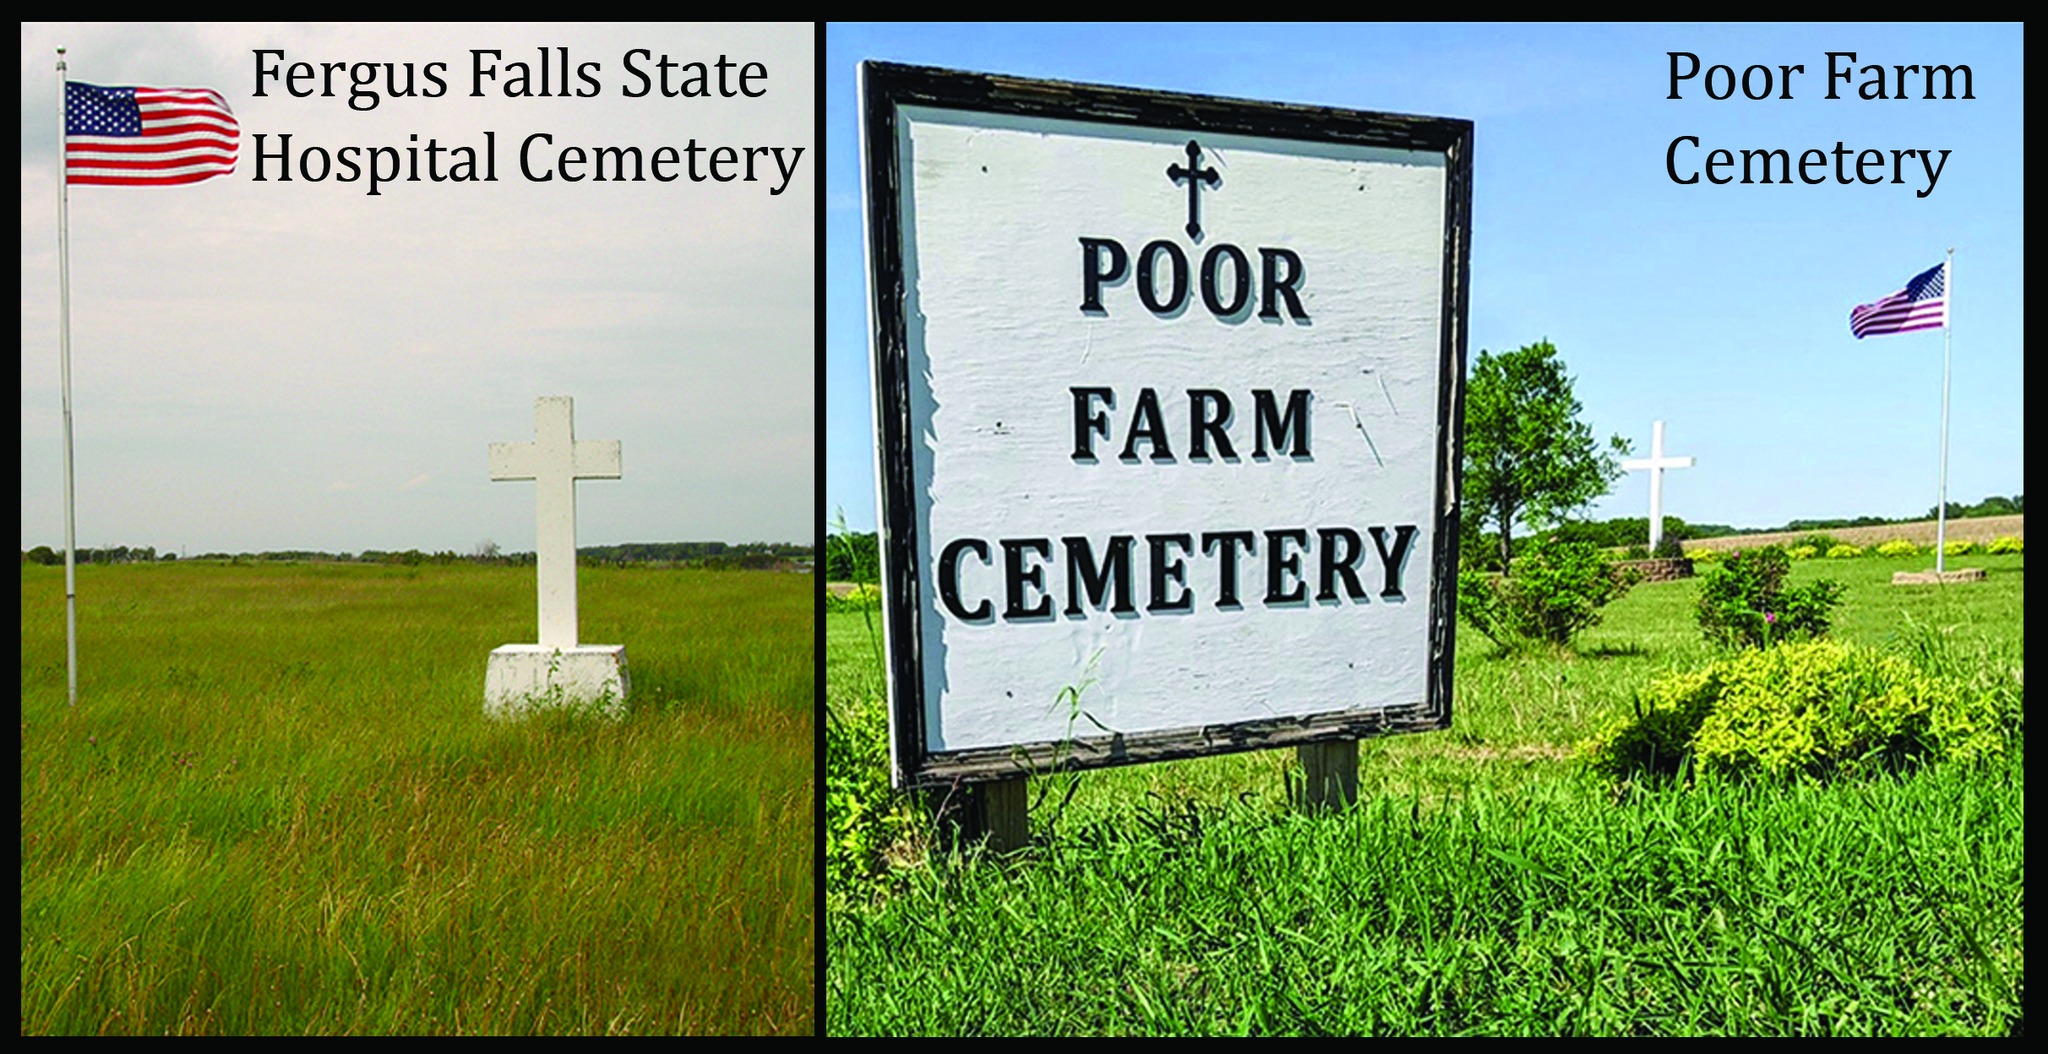 Poor Farm Cemetery